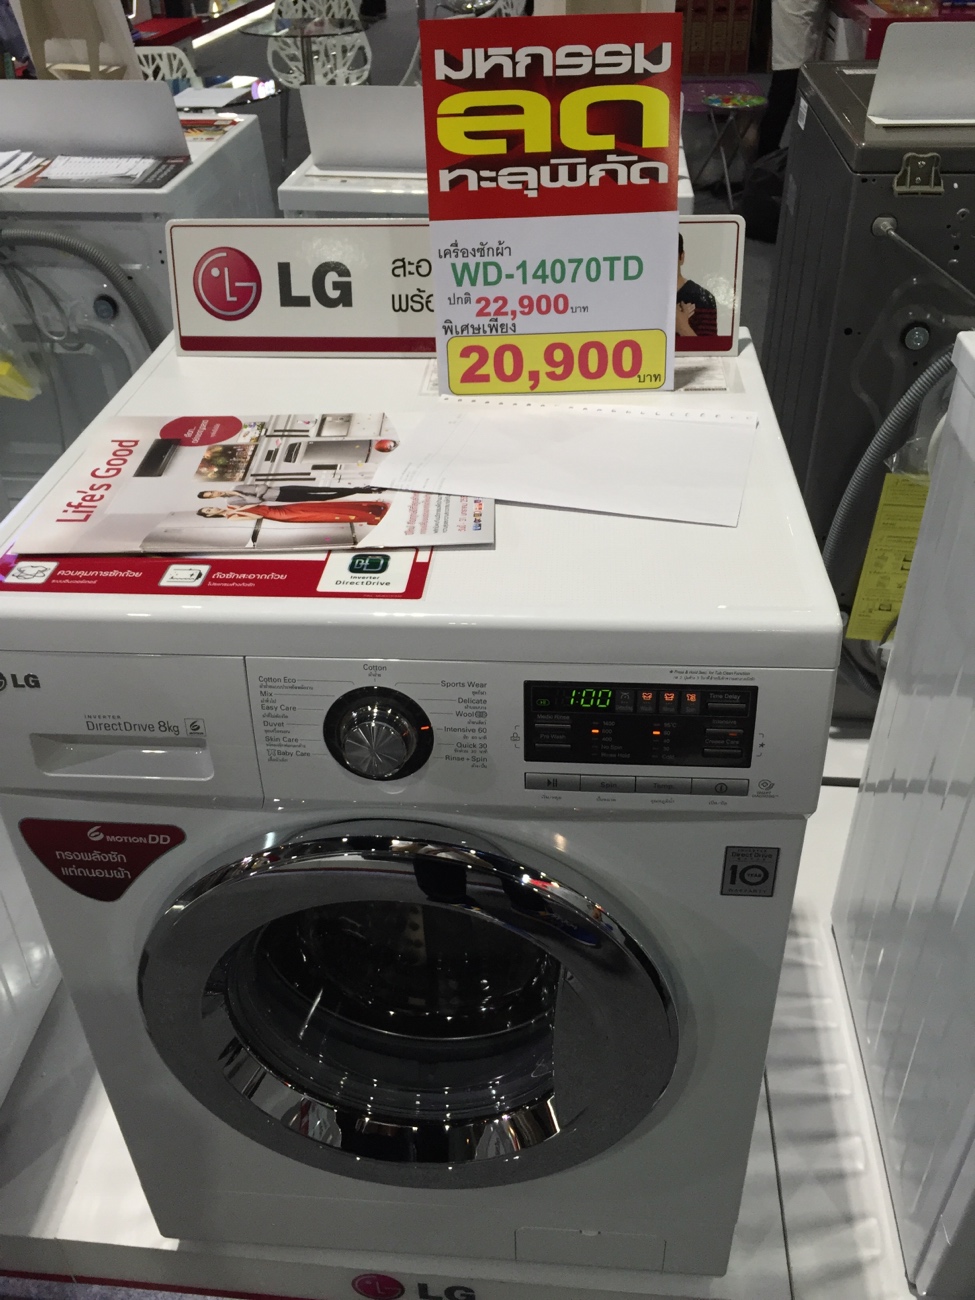 เครื่องซักผ้าฝาหน้าของ Lg รุ่นนี้ ดีไหมครับ เพราะราคาถูกมากกกกก - Pantip